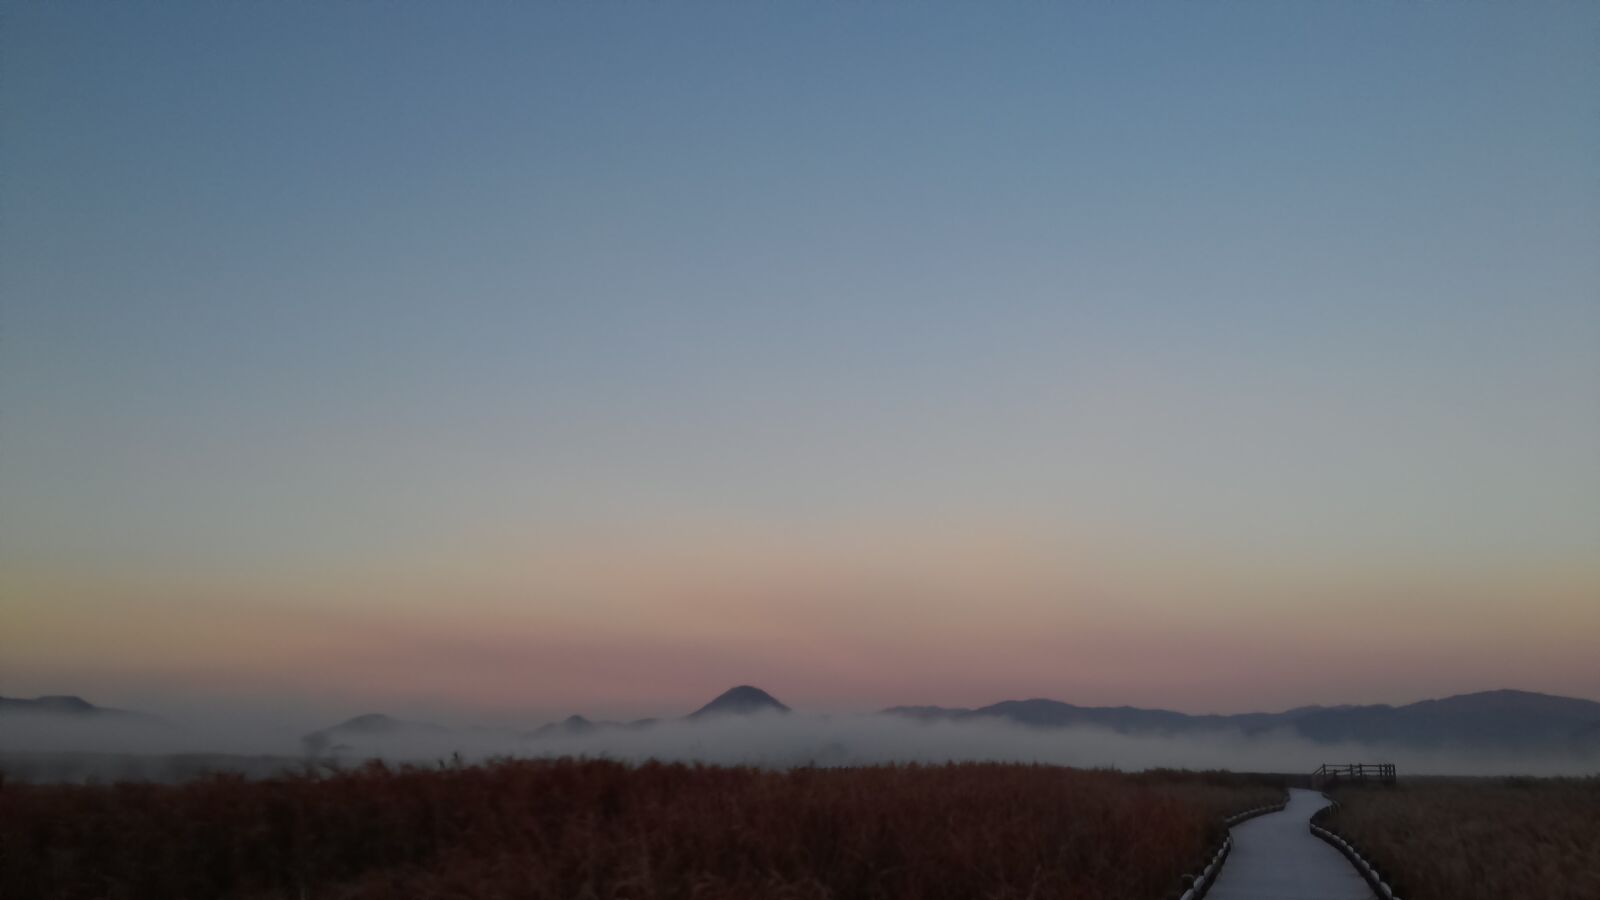 LG OPTIMUS G PRO sample photo. Suncheon bay, dawn, fog photography